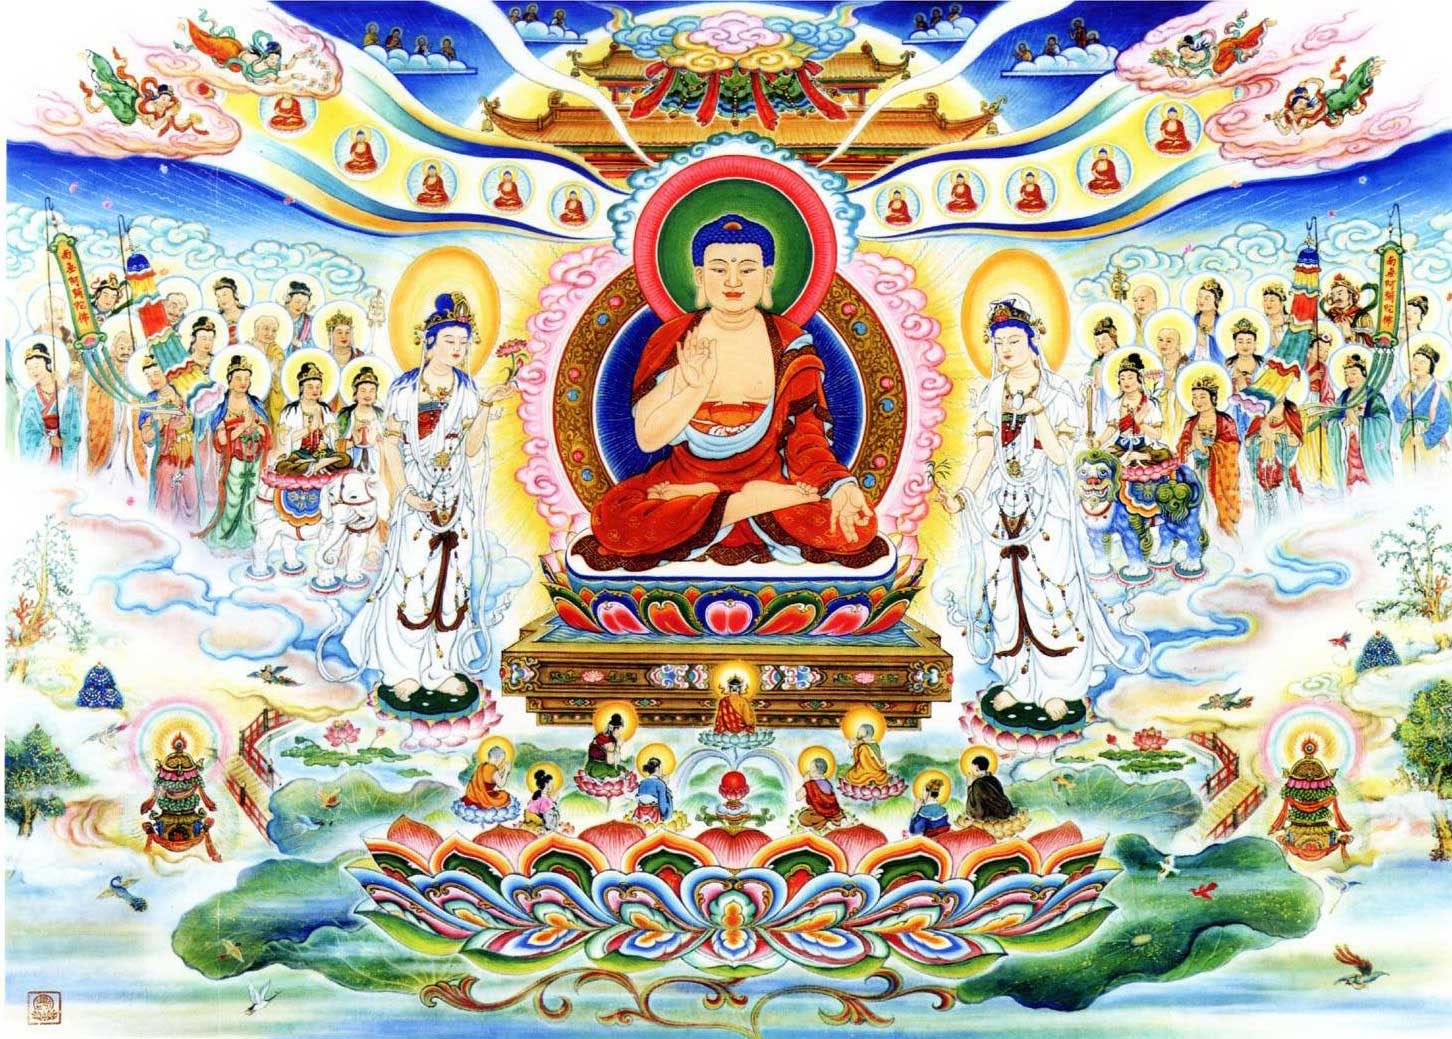 Hình Ảnh Phật Đẹp: Hình ảnh đẹp nhất về Phật giáo mang đến trải nghiệm tuyệt vời và sâu sắc cho những ai đam mê tôn giáo và nghệ thuật.